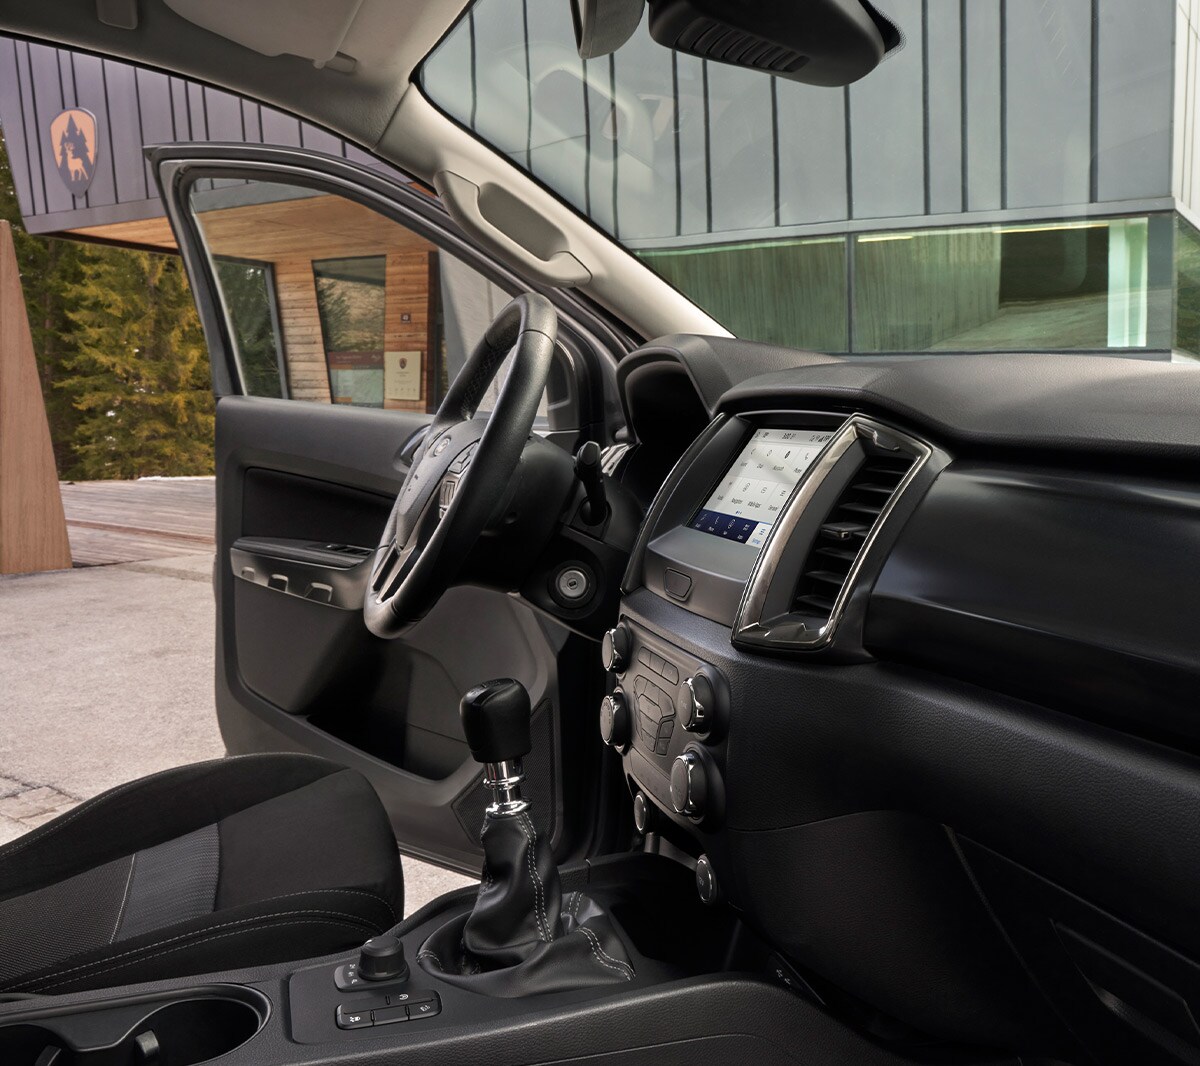 Ford Ranger Wolftrak interior view showing seats